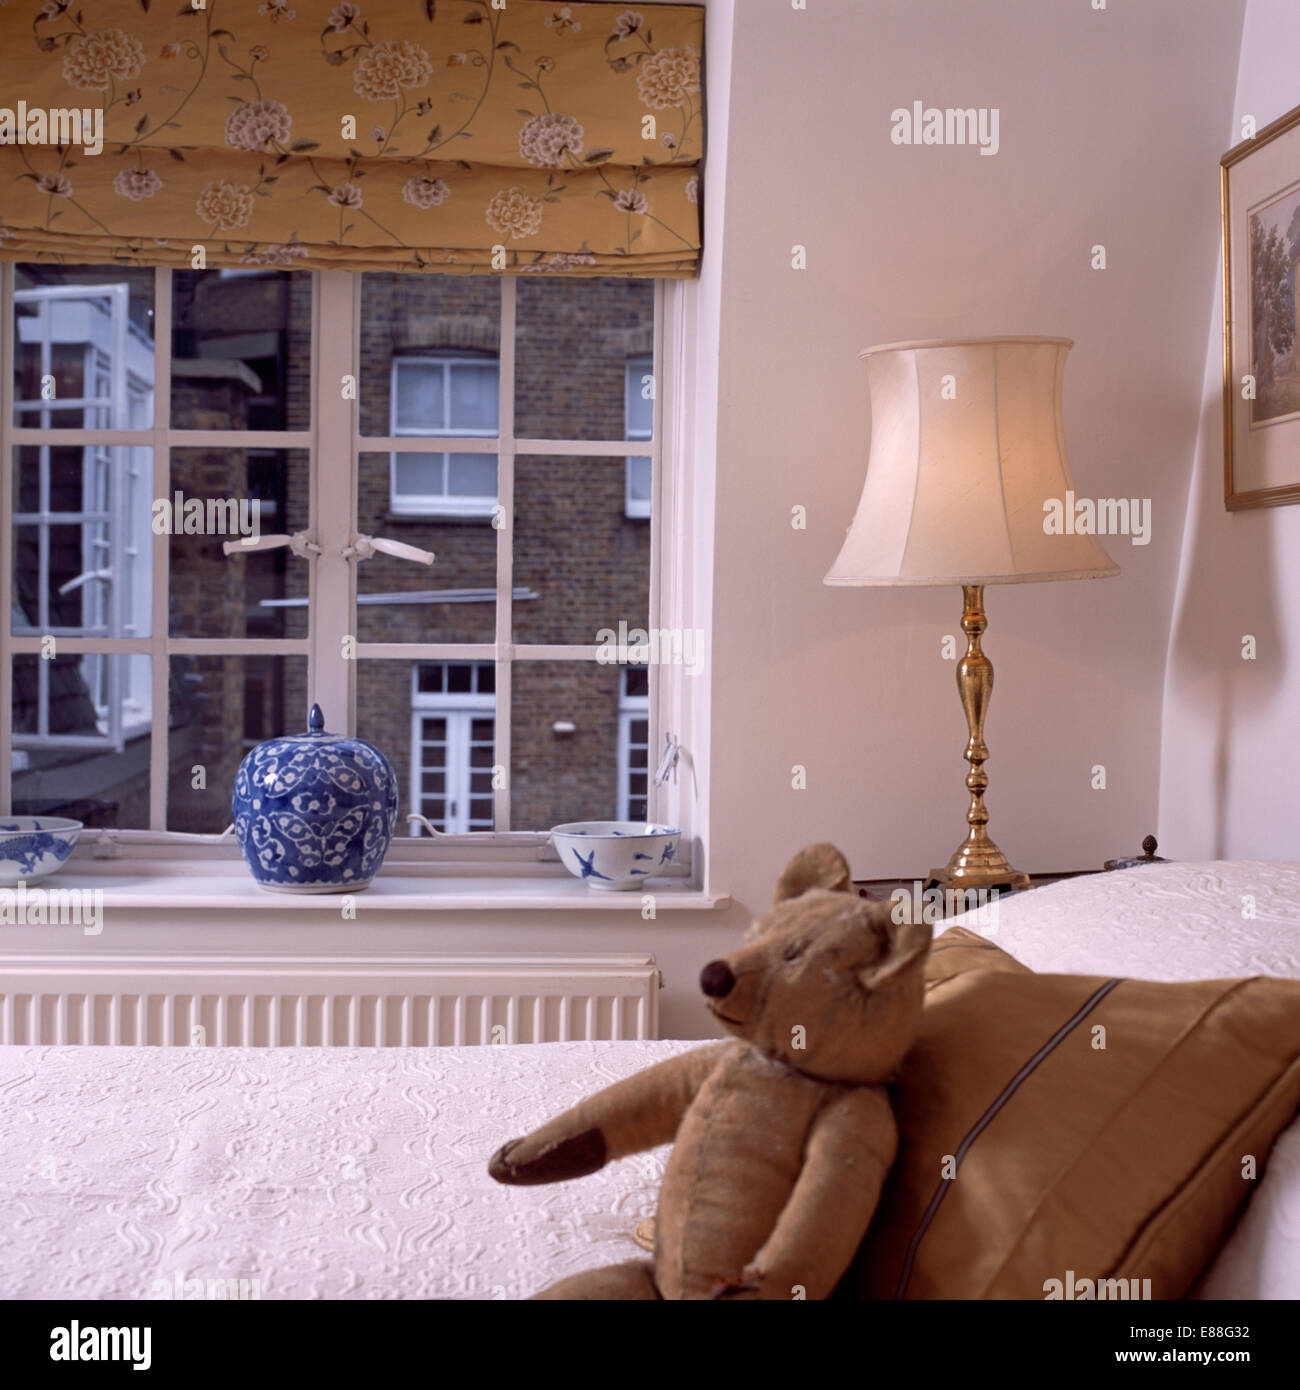 Lampe neben Bett mit alten Teddybär und Seide Kissen vor Fenster mit gemusterten neutral blind Stockfoto